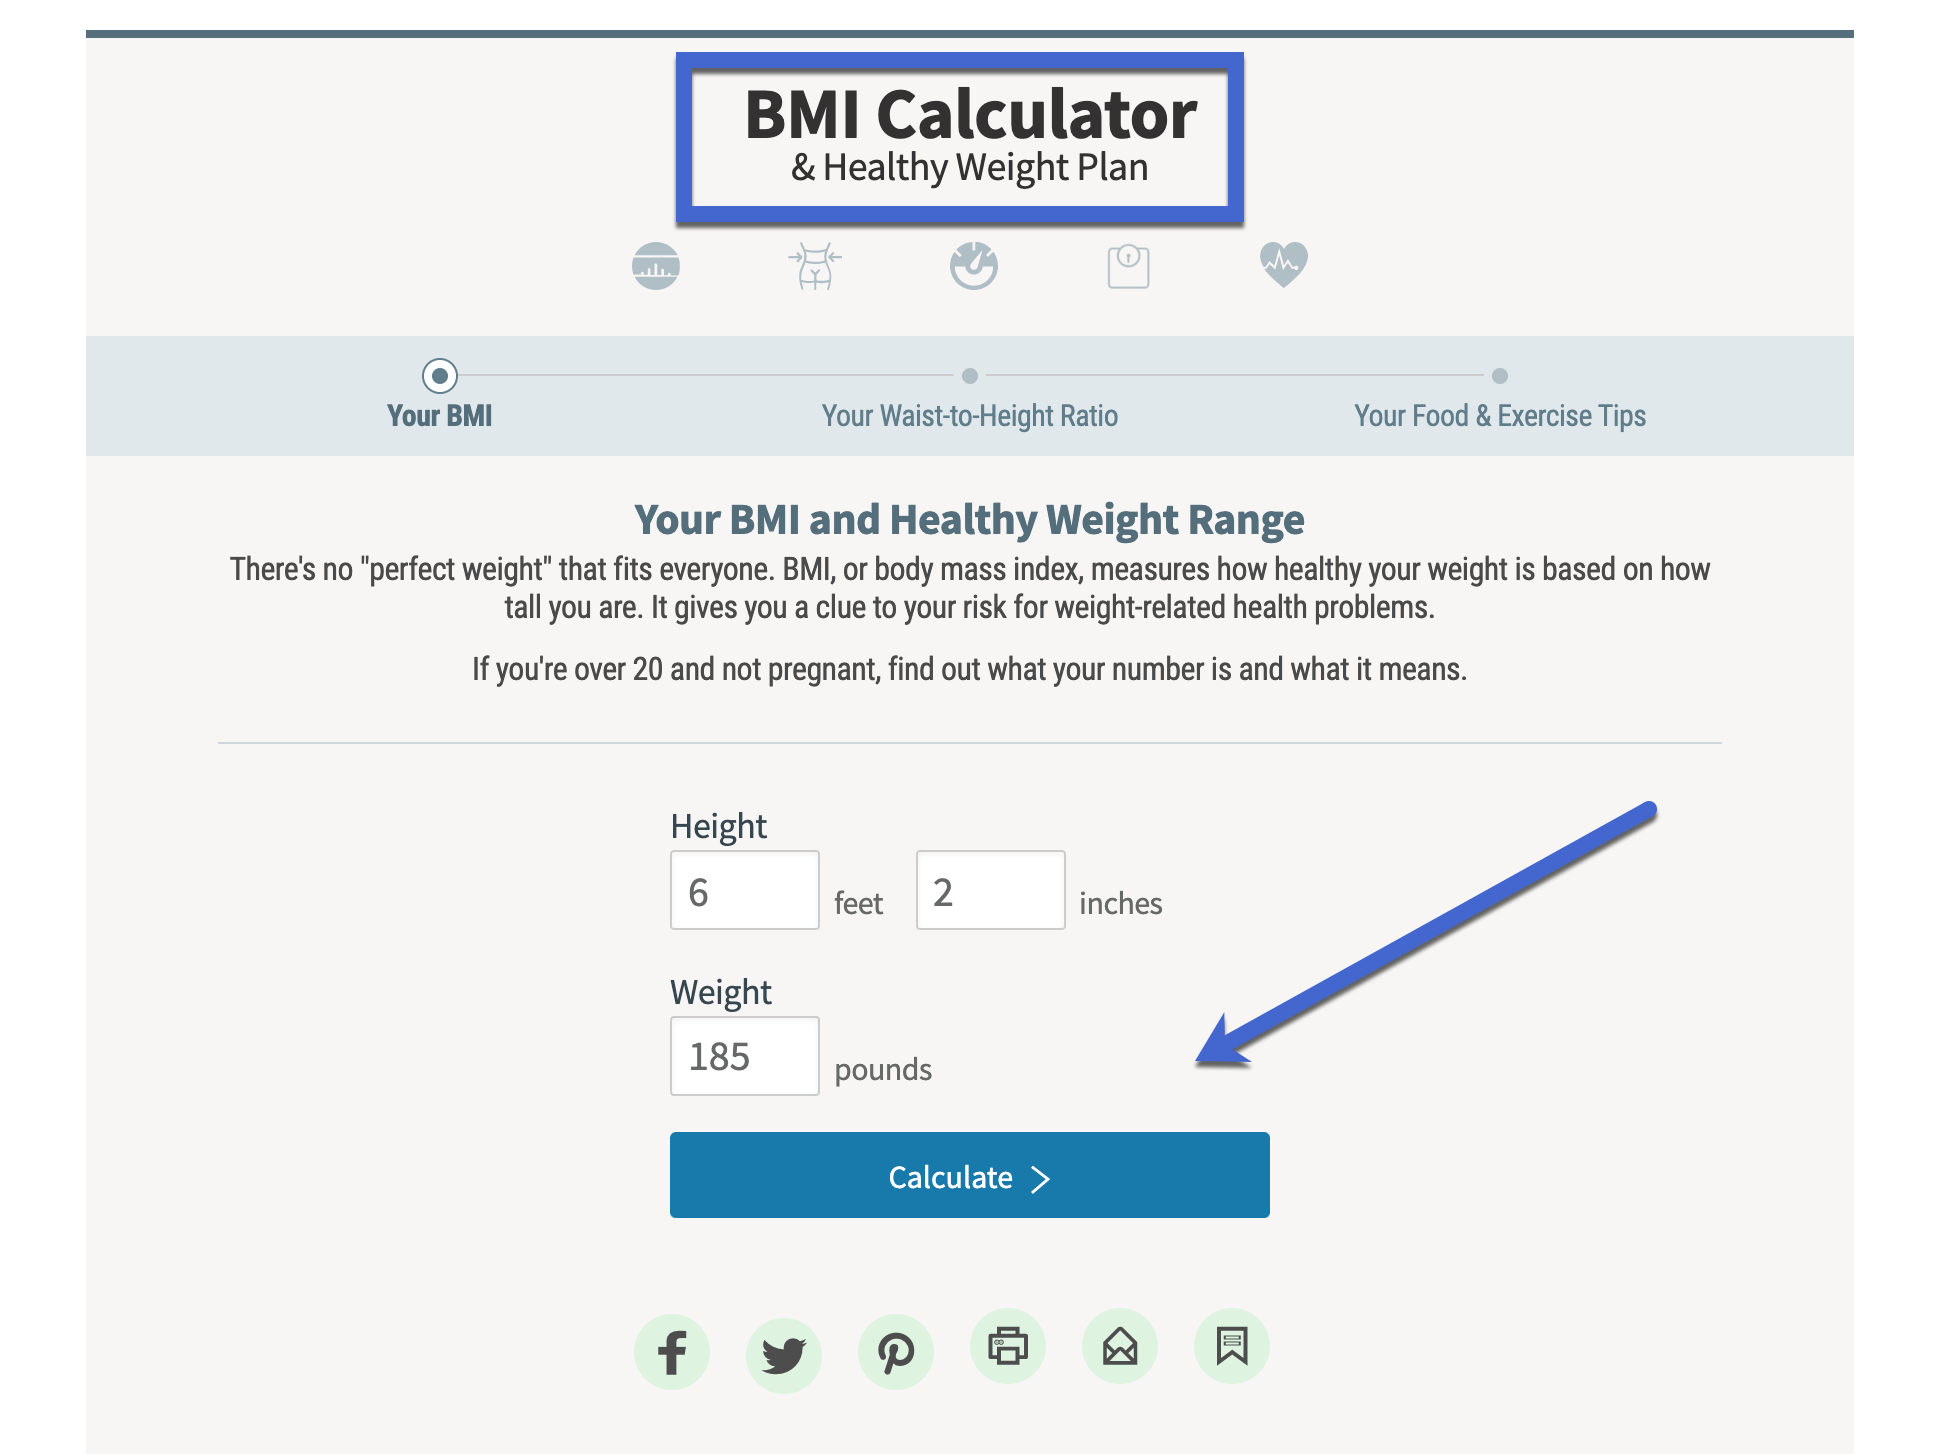 ماشین حساب BMI